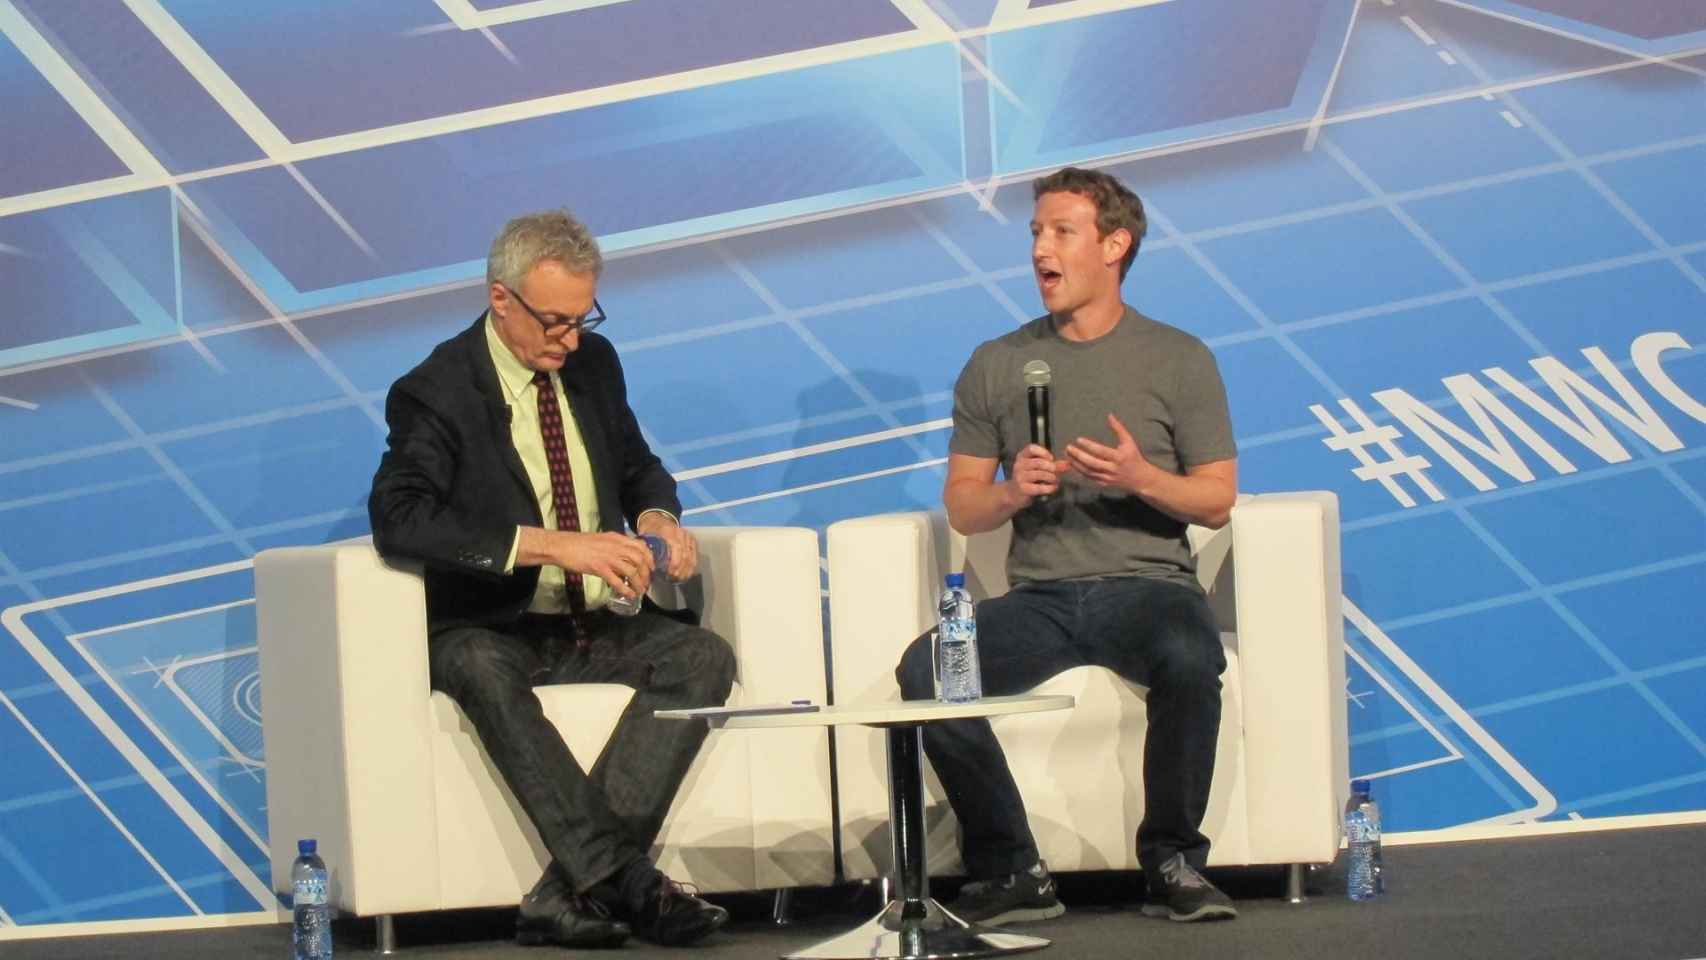 Mark Zuckerberg, durate el Mobile / EUROPA PRESS